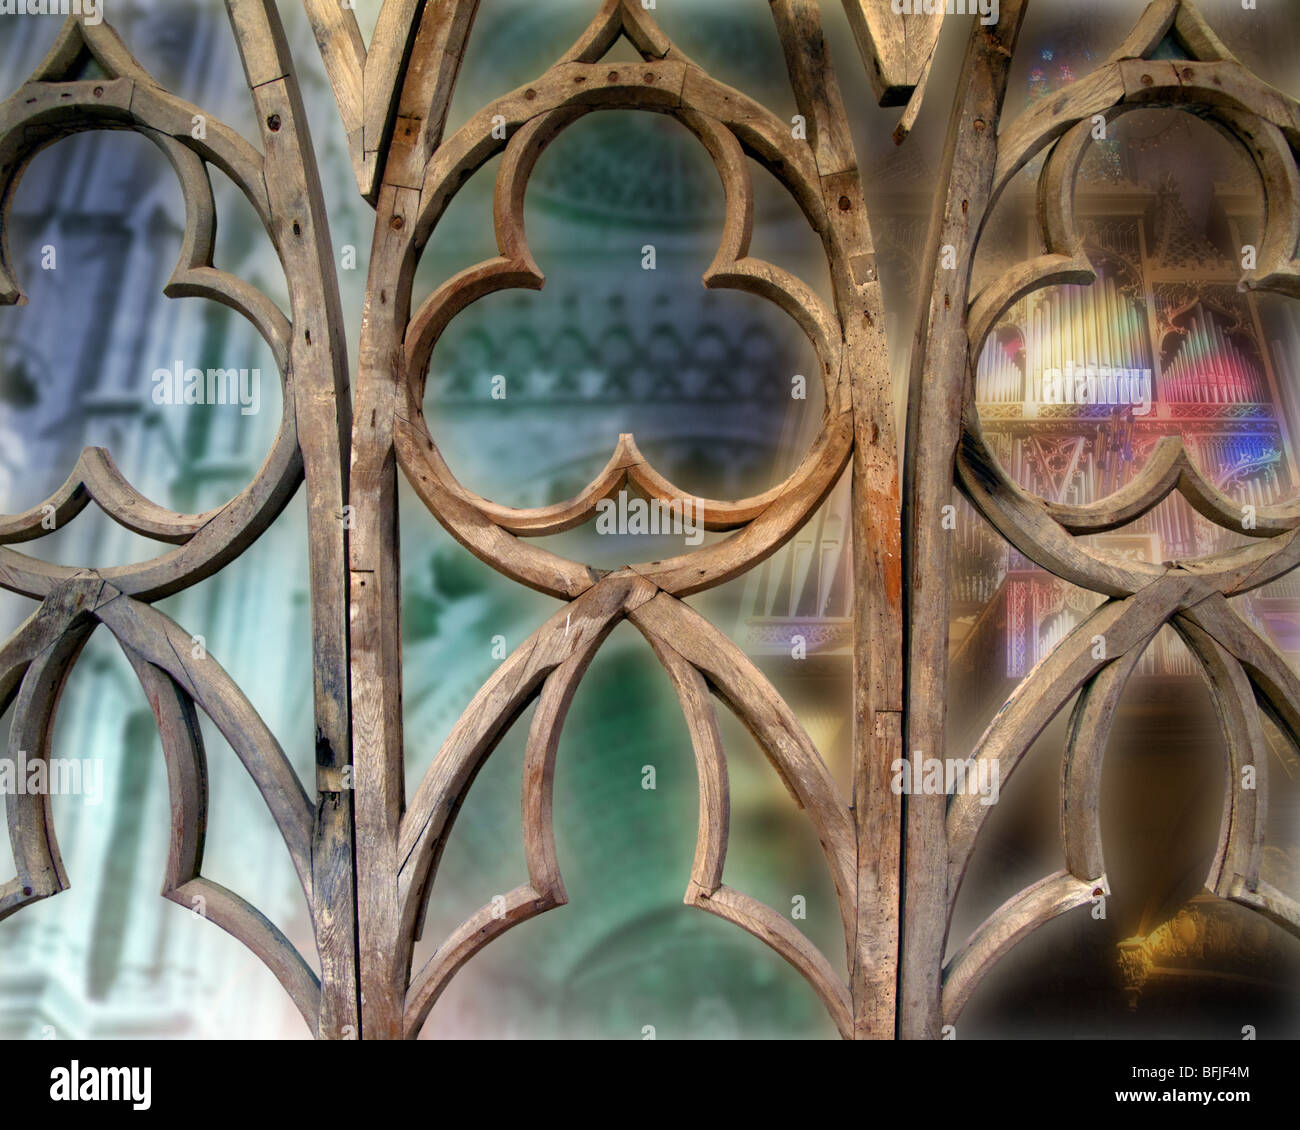 ES - MALLORCA: La Seu Cathedral at Palma de Mallorca (Digital Art) Stock Photo